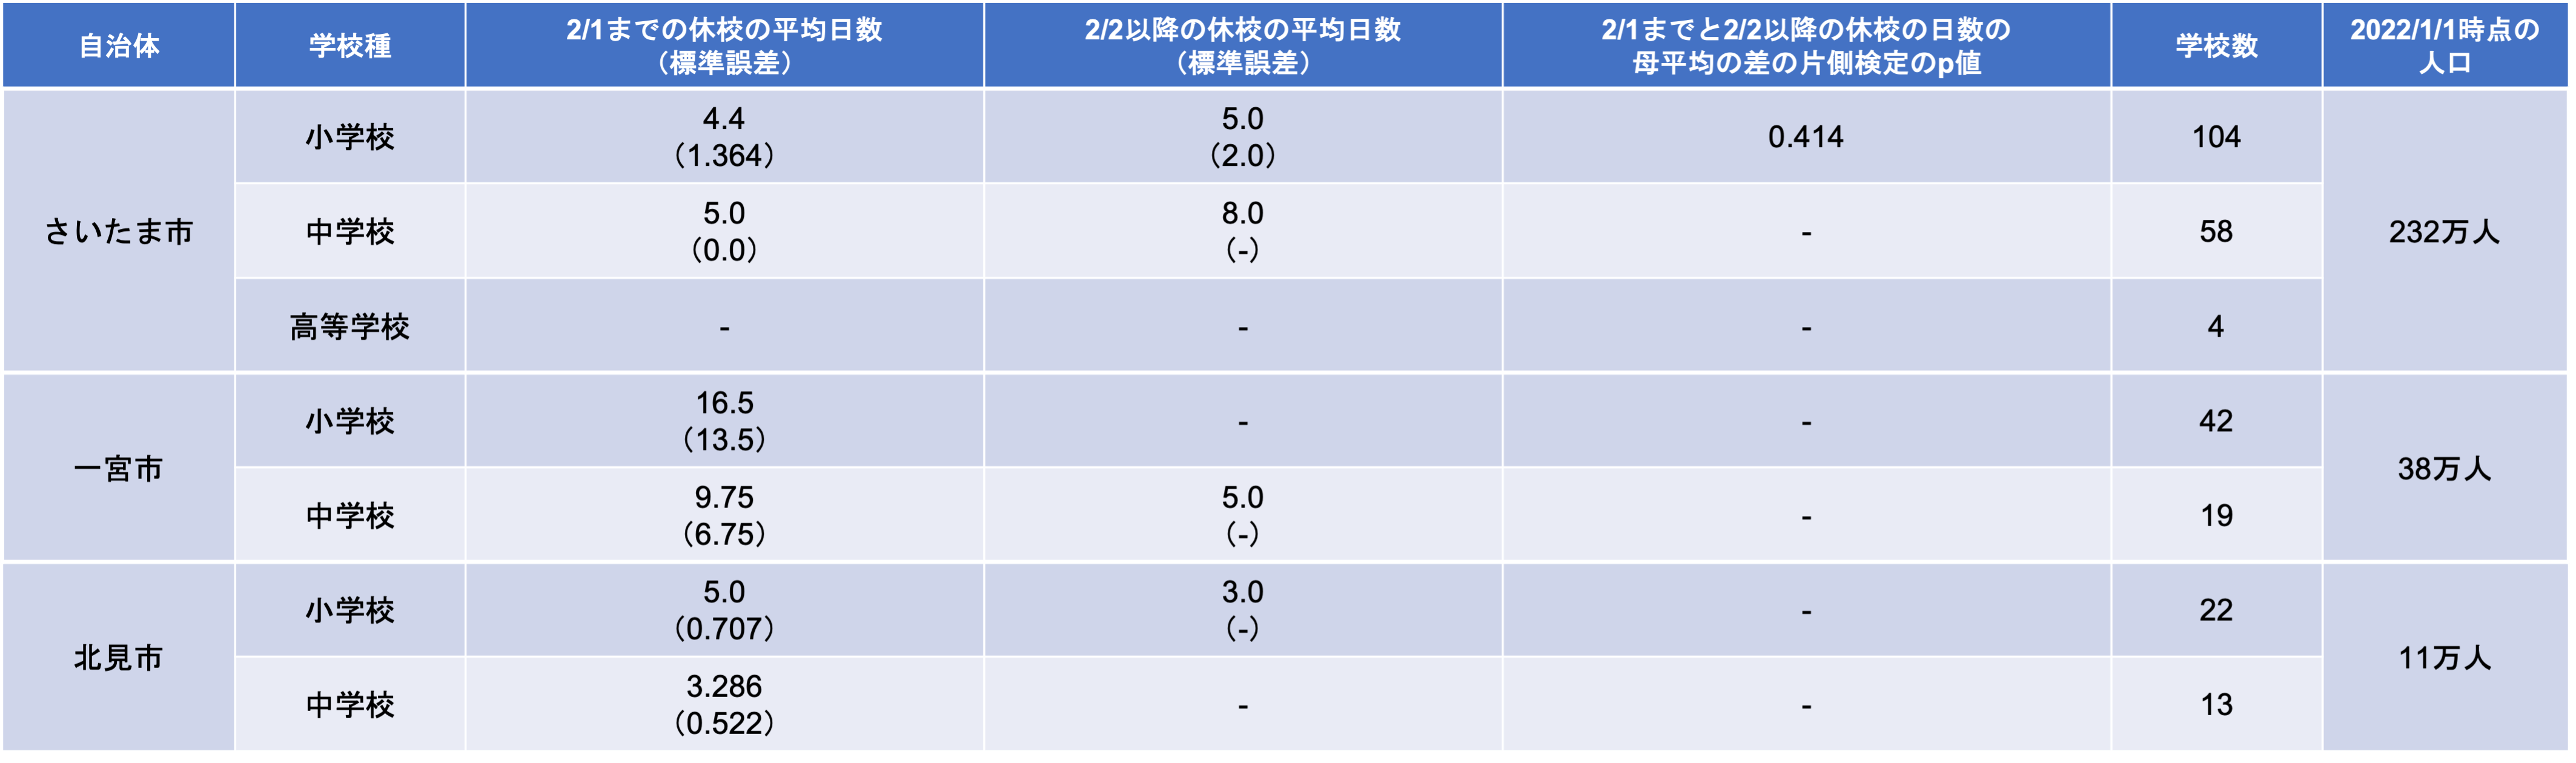 自治体別休校日数の推移（2/2前後での区分）